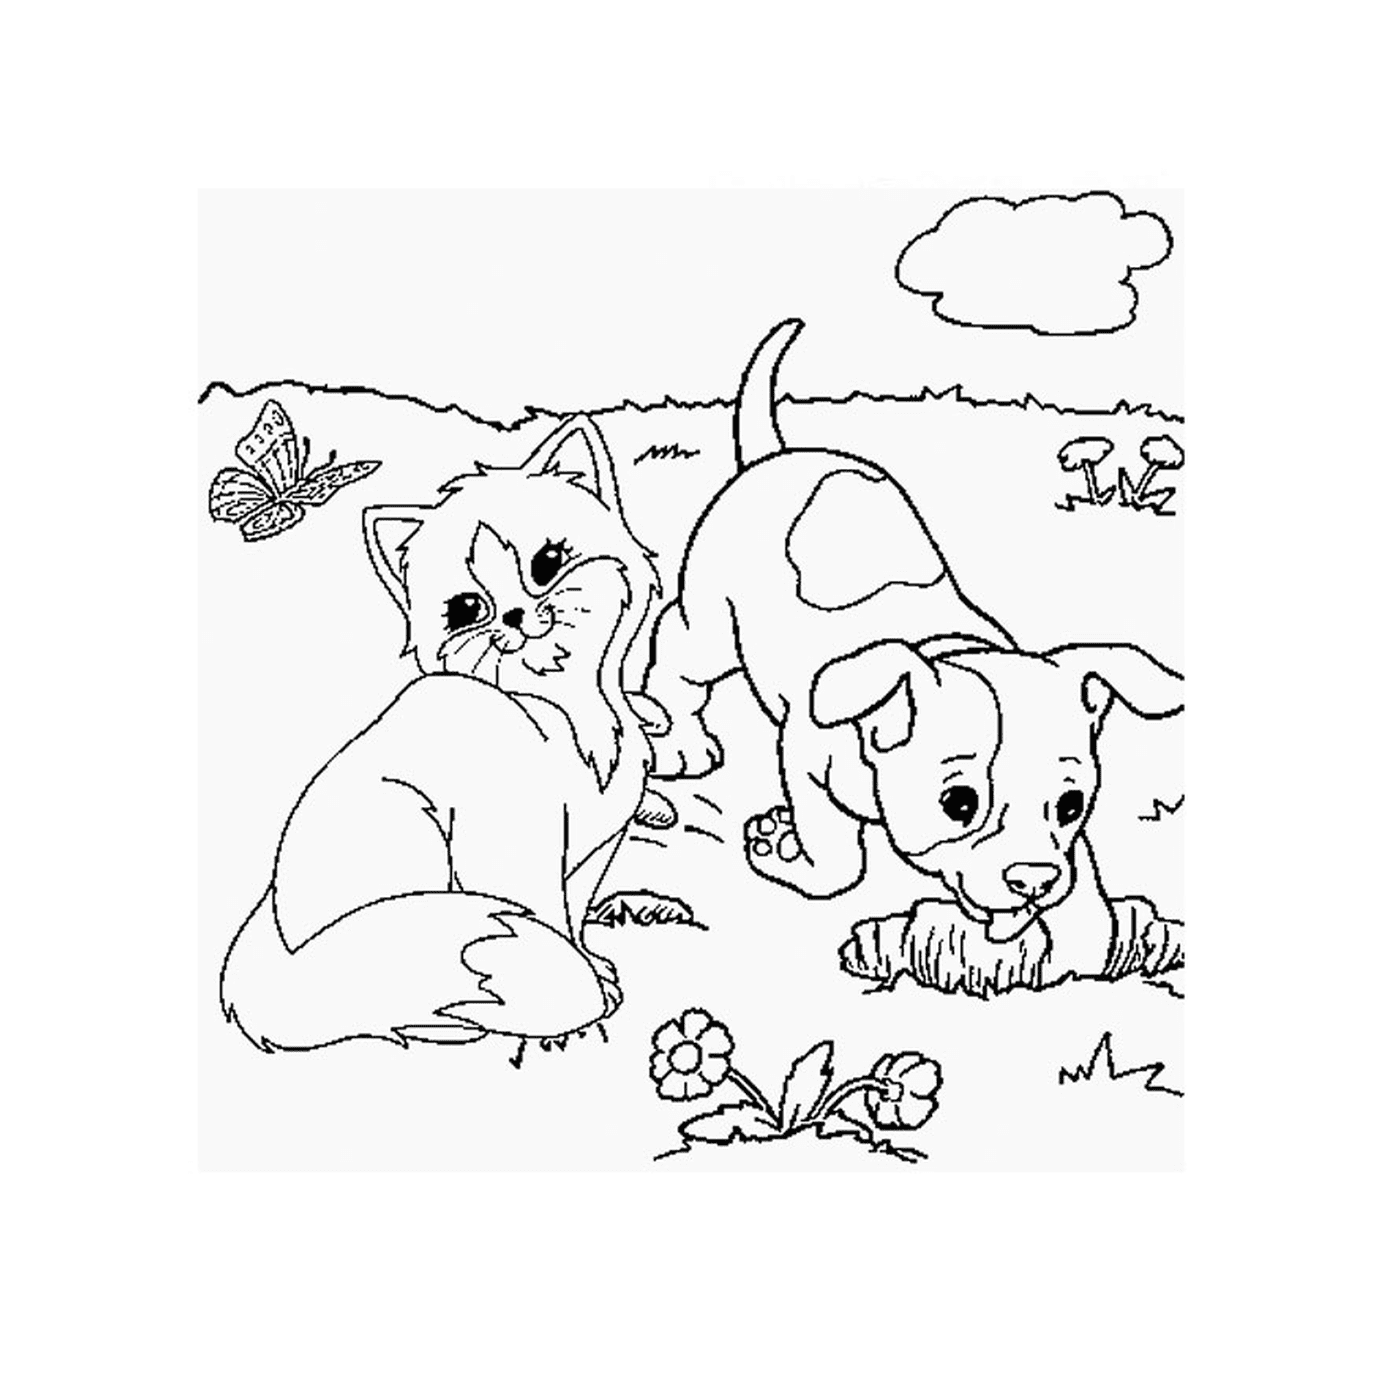  एक पिल्ला और घास में एक कुत्ता खेलता है 